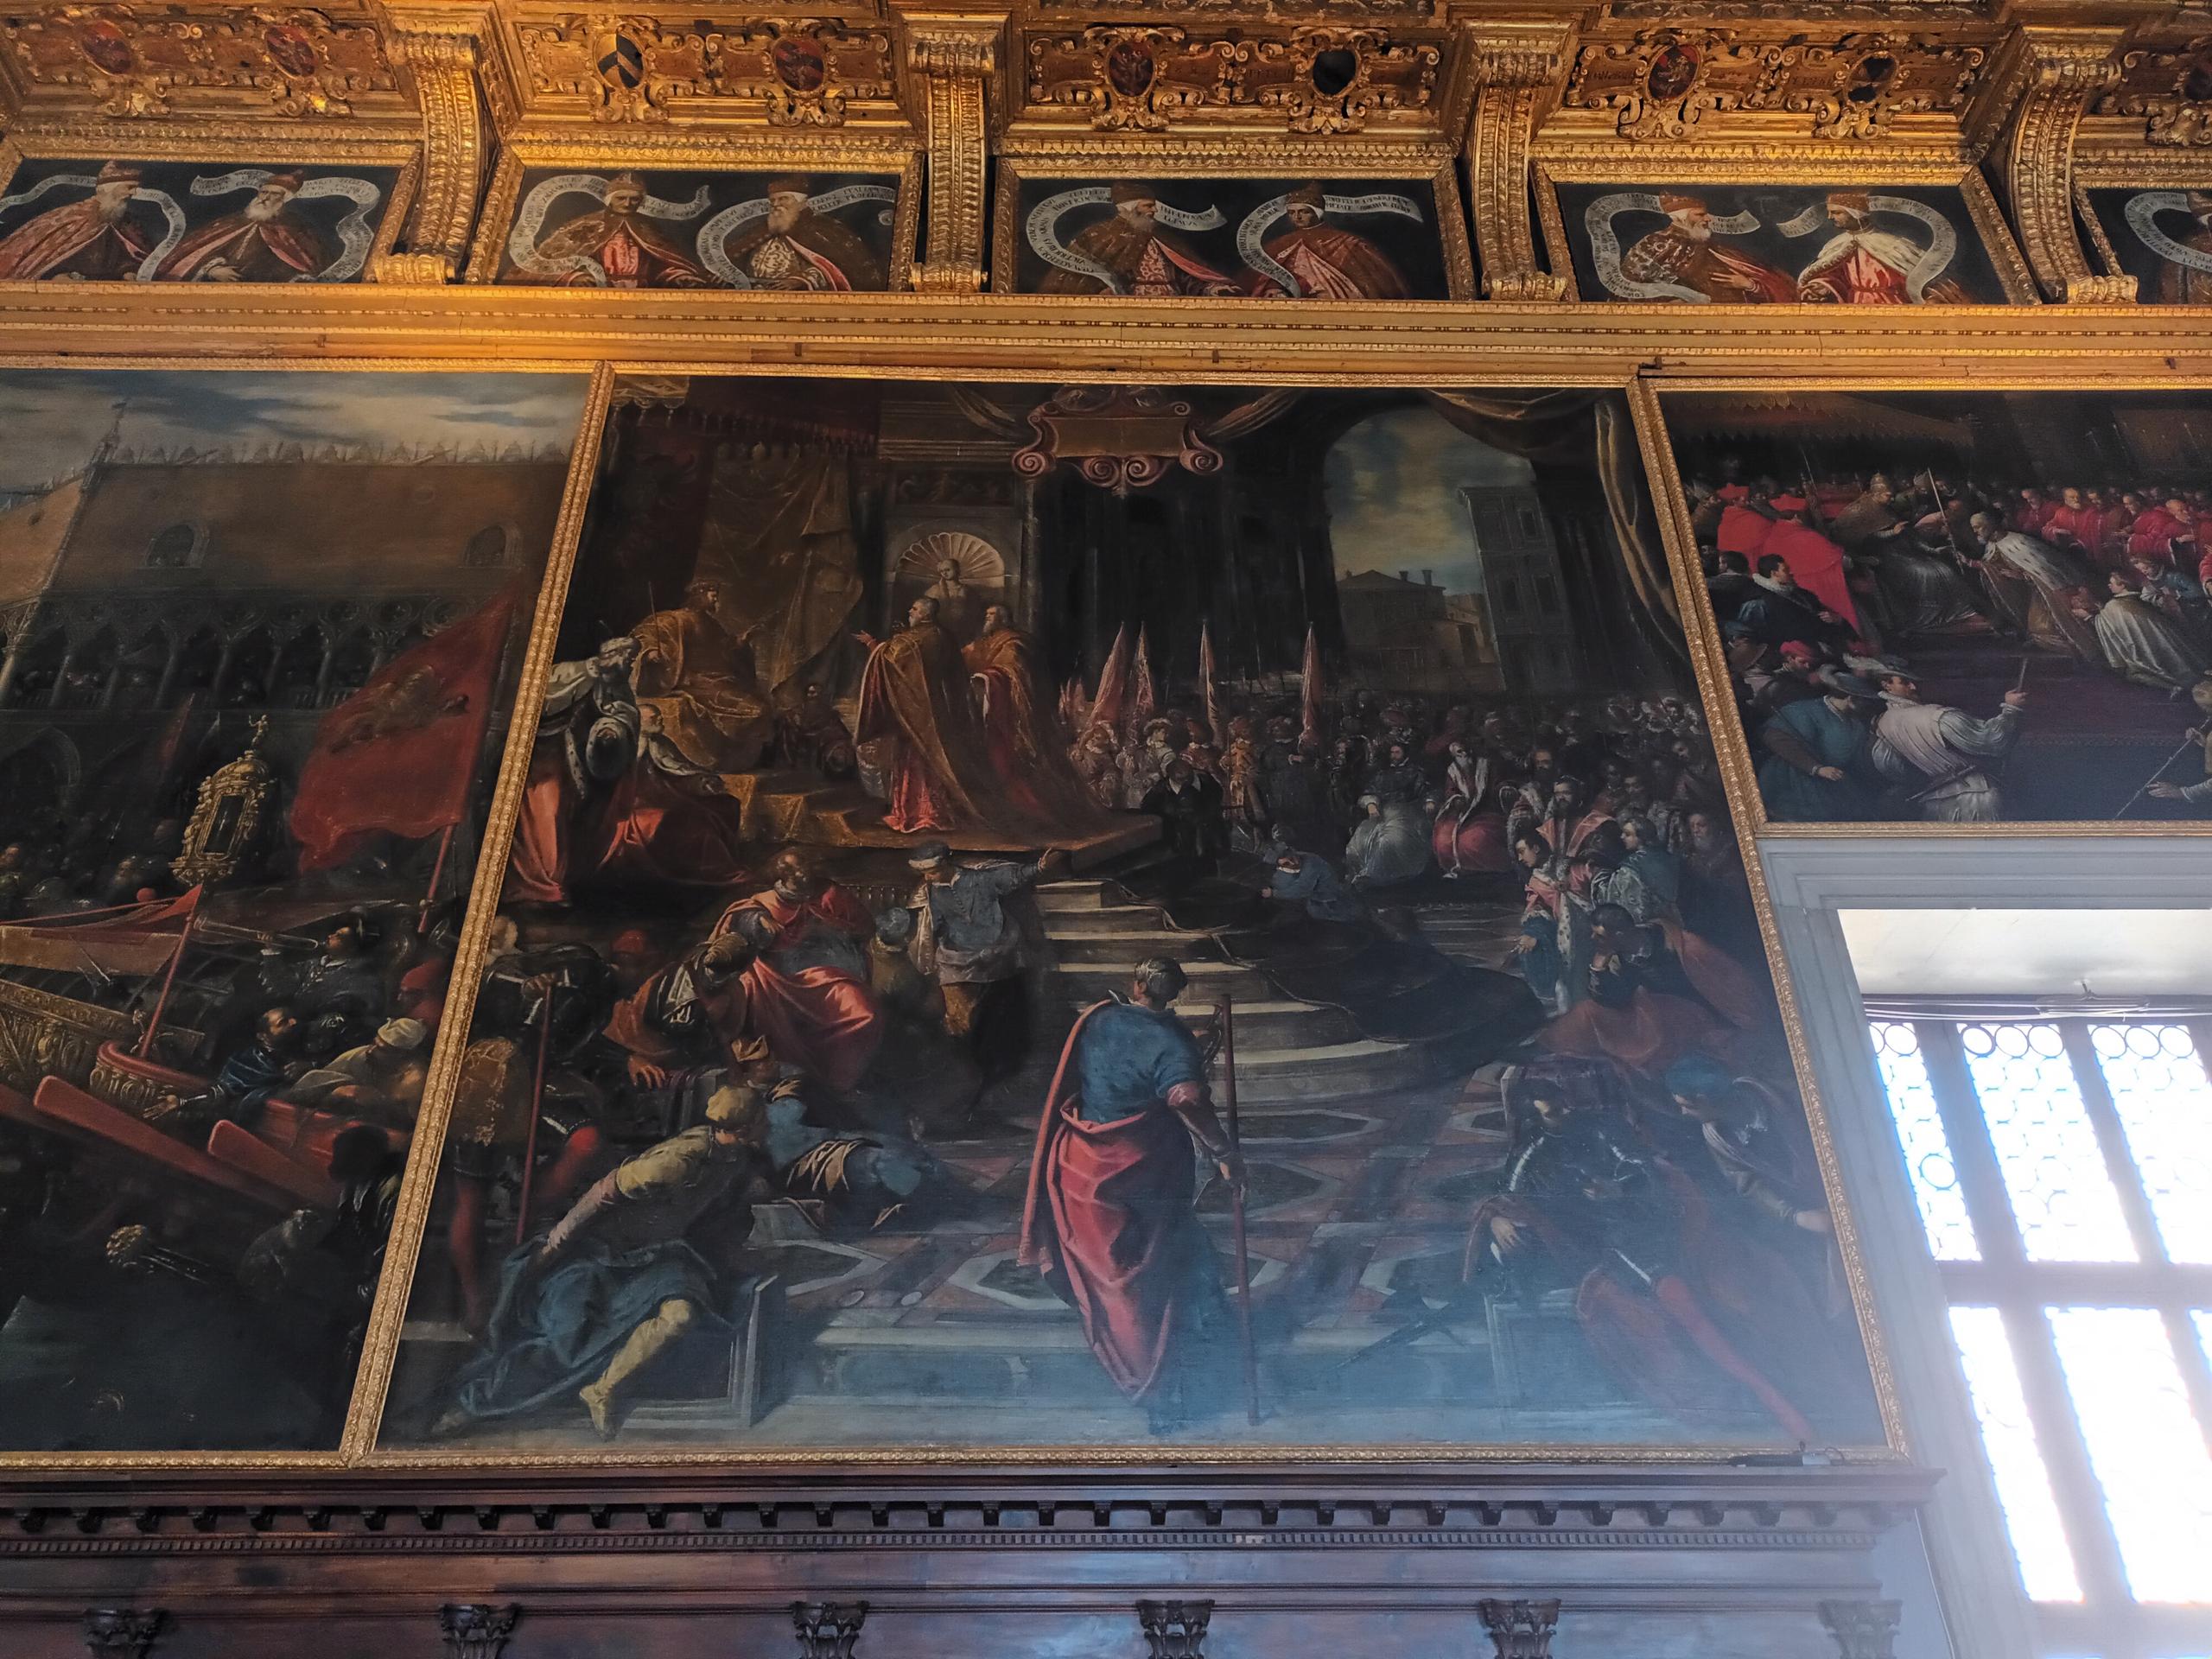 Dipinto su tela di Jacopo Robusti detto il Tintoretto. 1590-1592